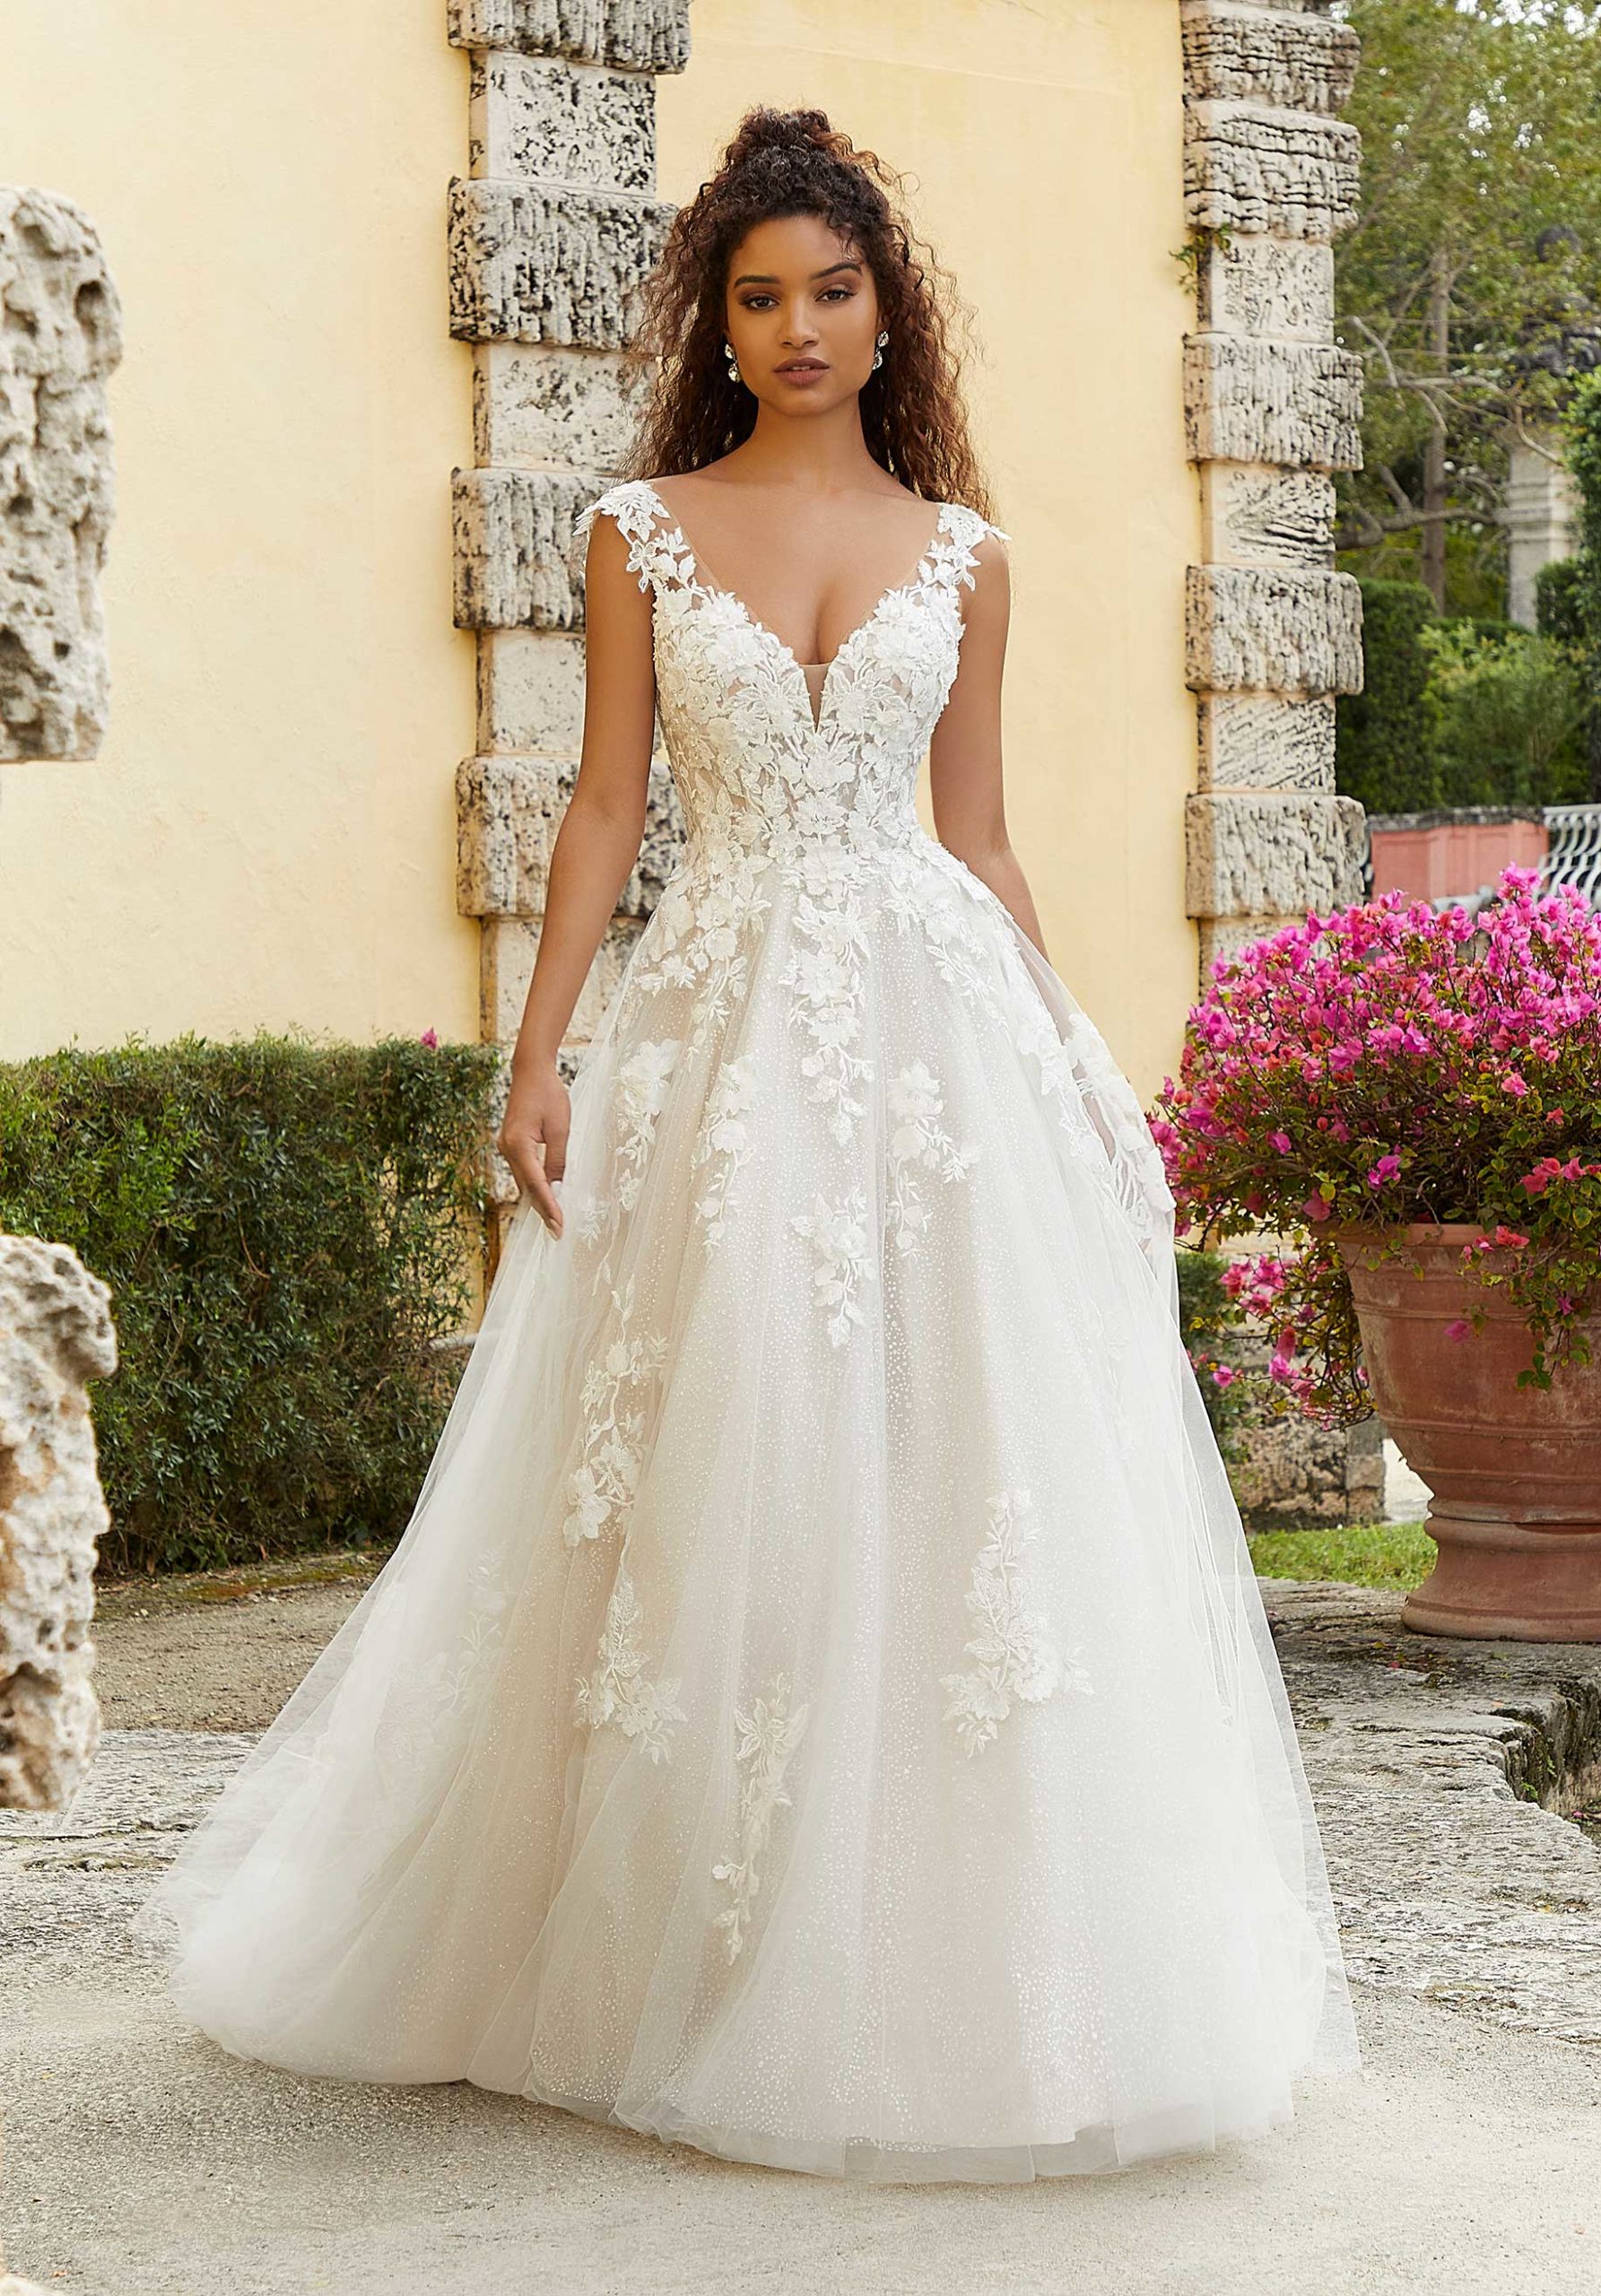 Fiorenza wedding dress by Morilee